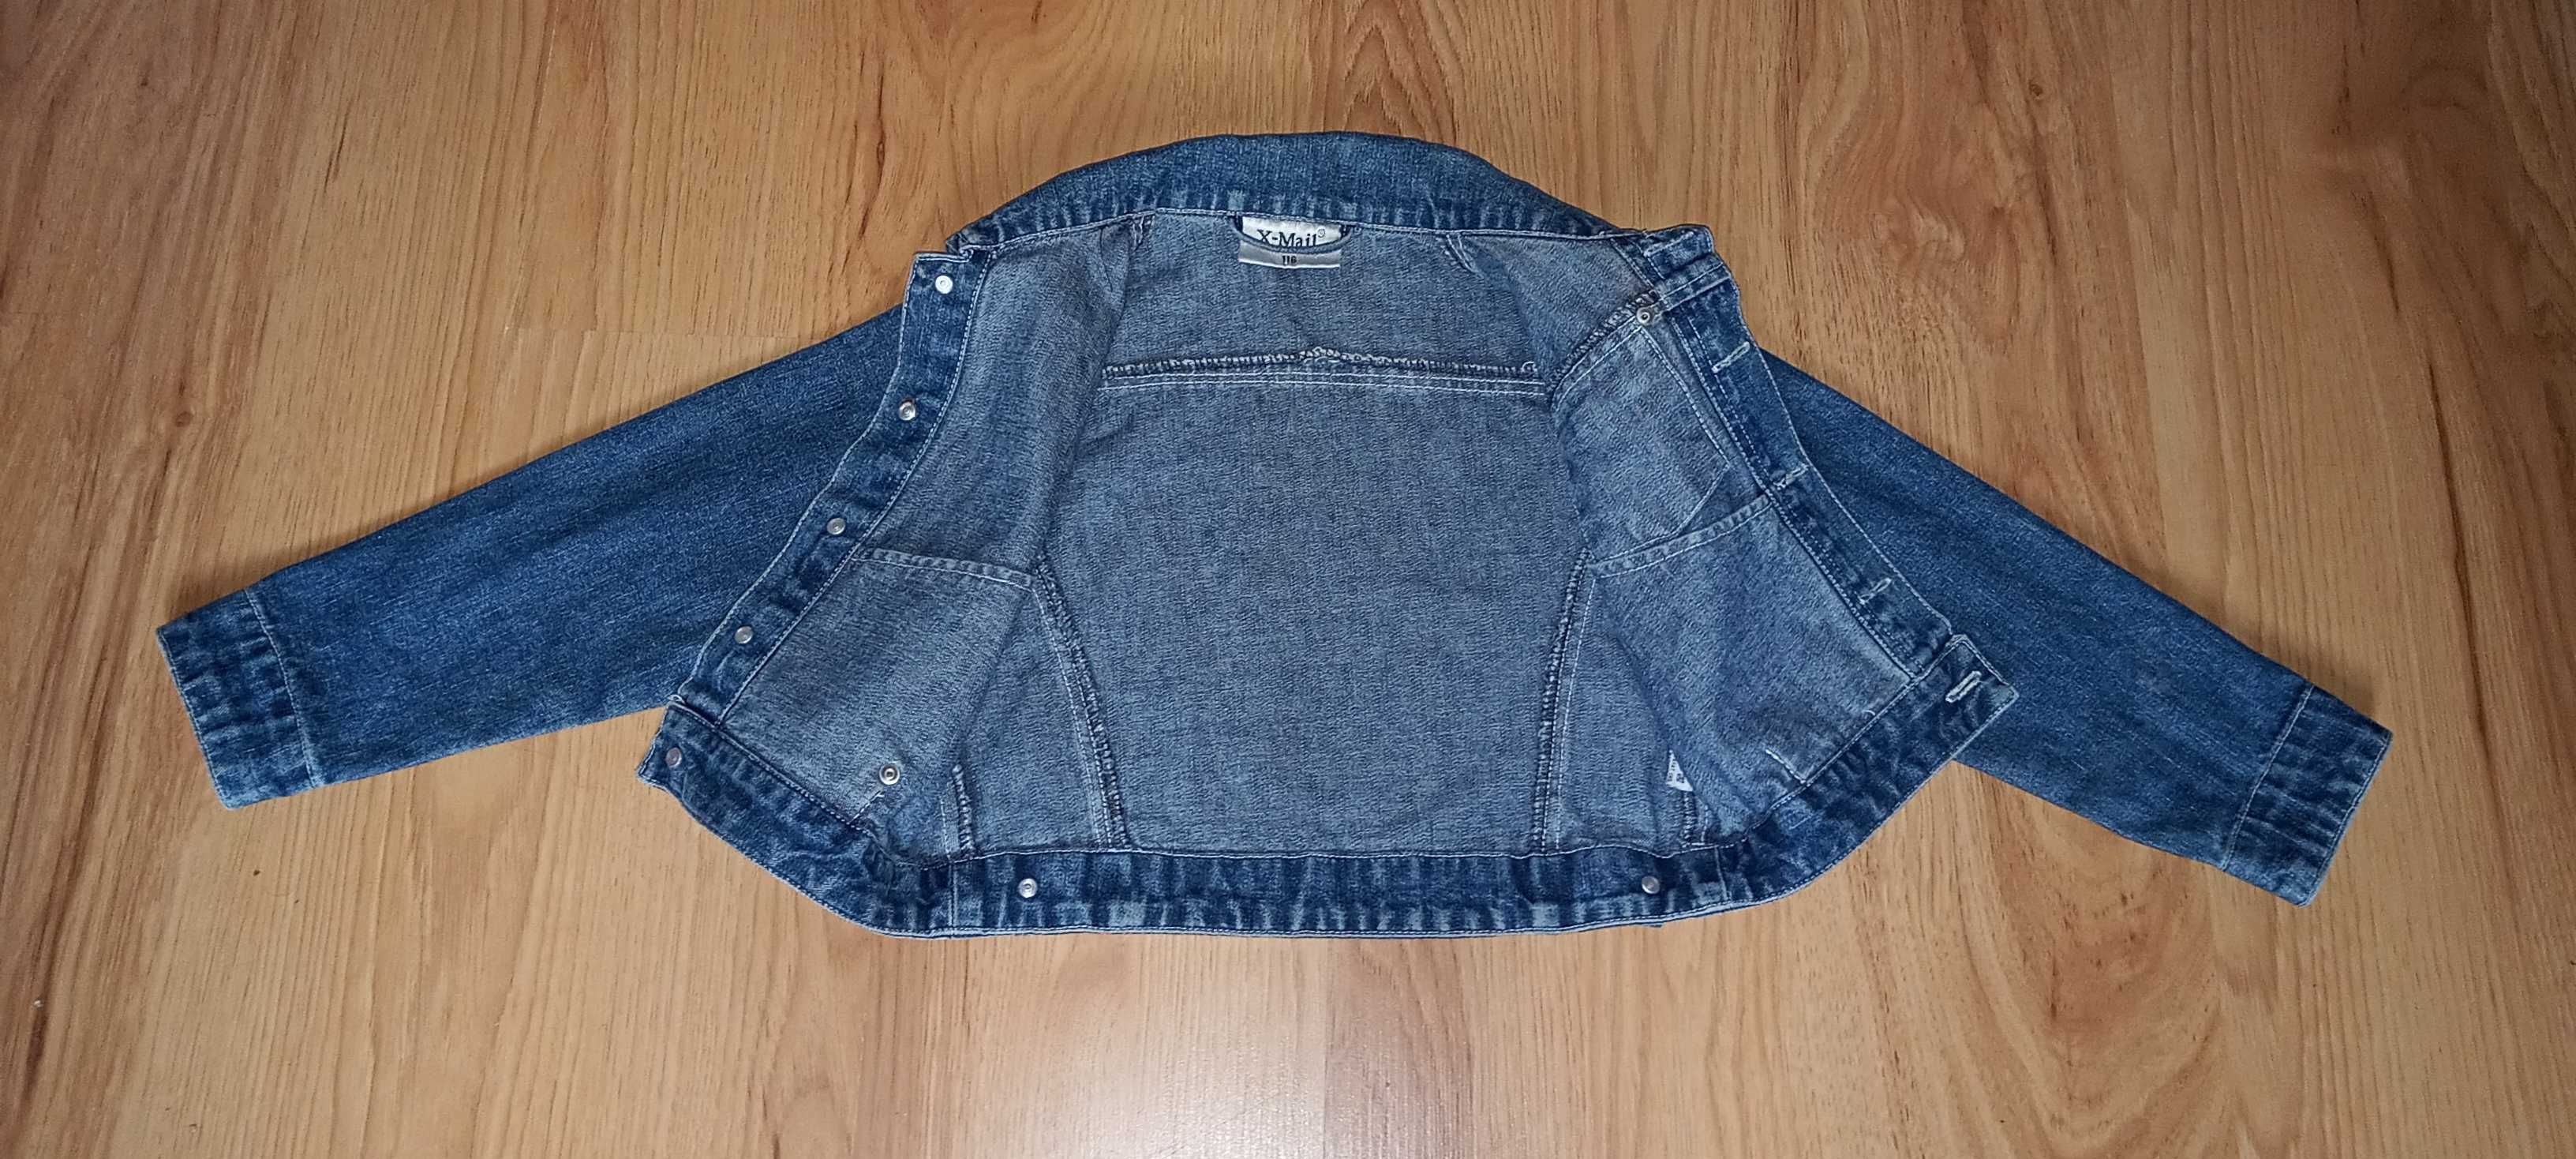 Kurtka jeansowa ramoneska dla dziewczynki rozmiar 116